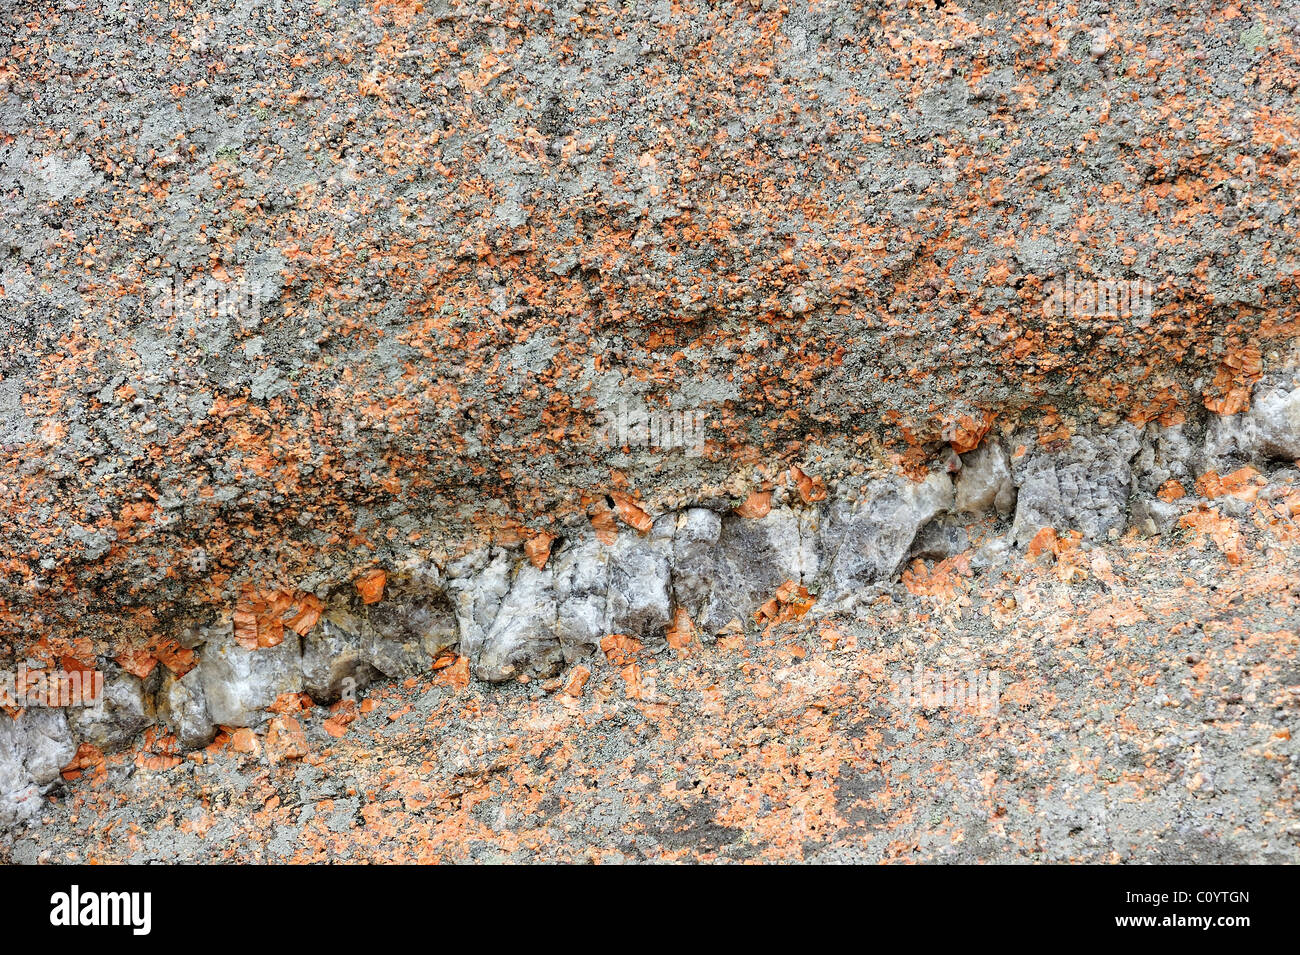 Capa de roca de granito, cuarzo en Costa de Granito Rosa, de Ploumanac'h, Bretaña, Francia Foto de stock